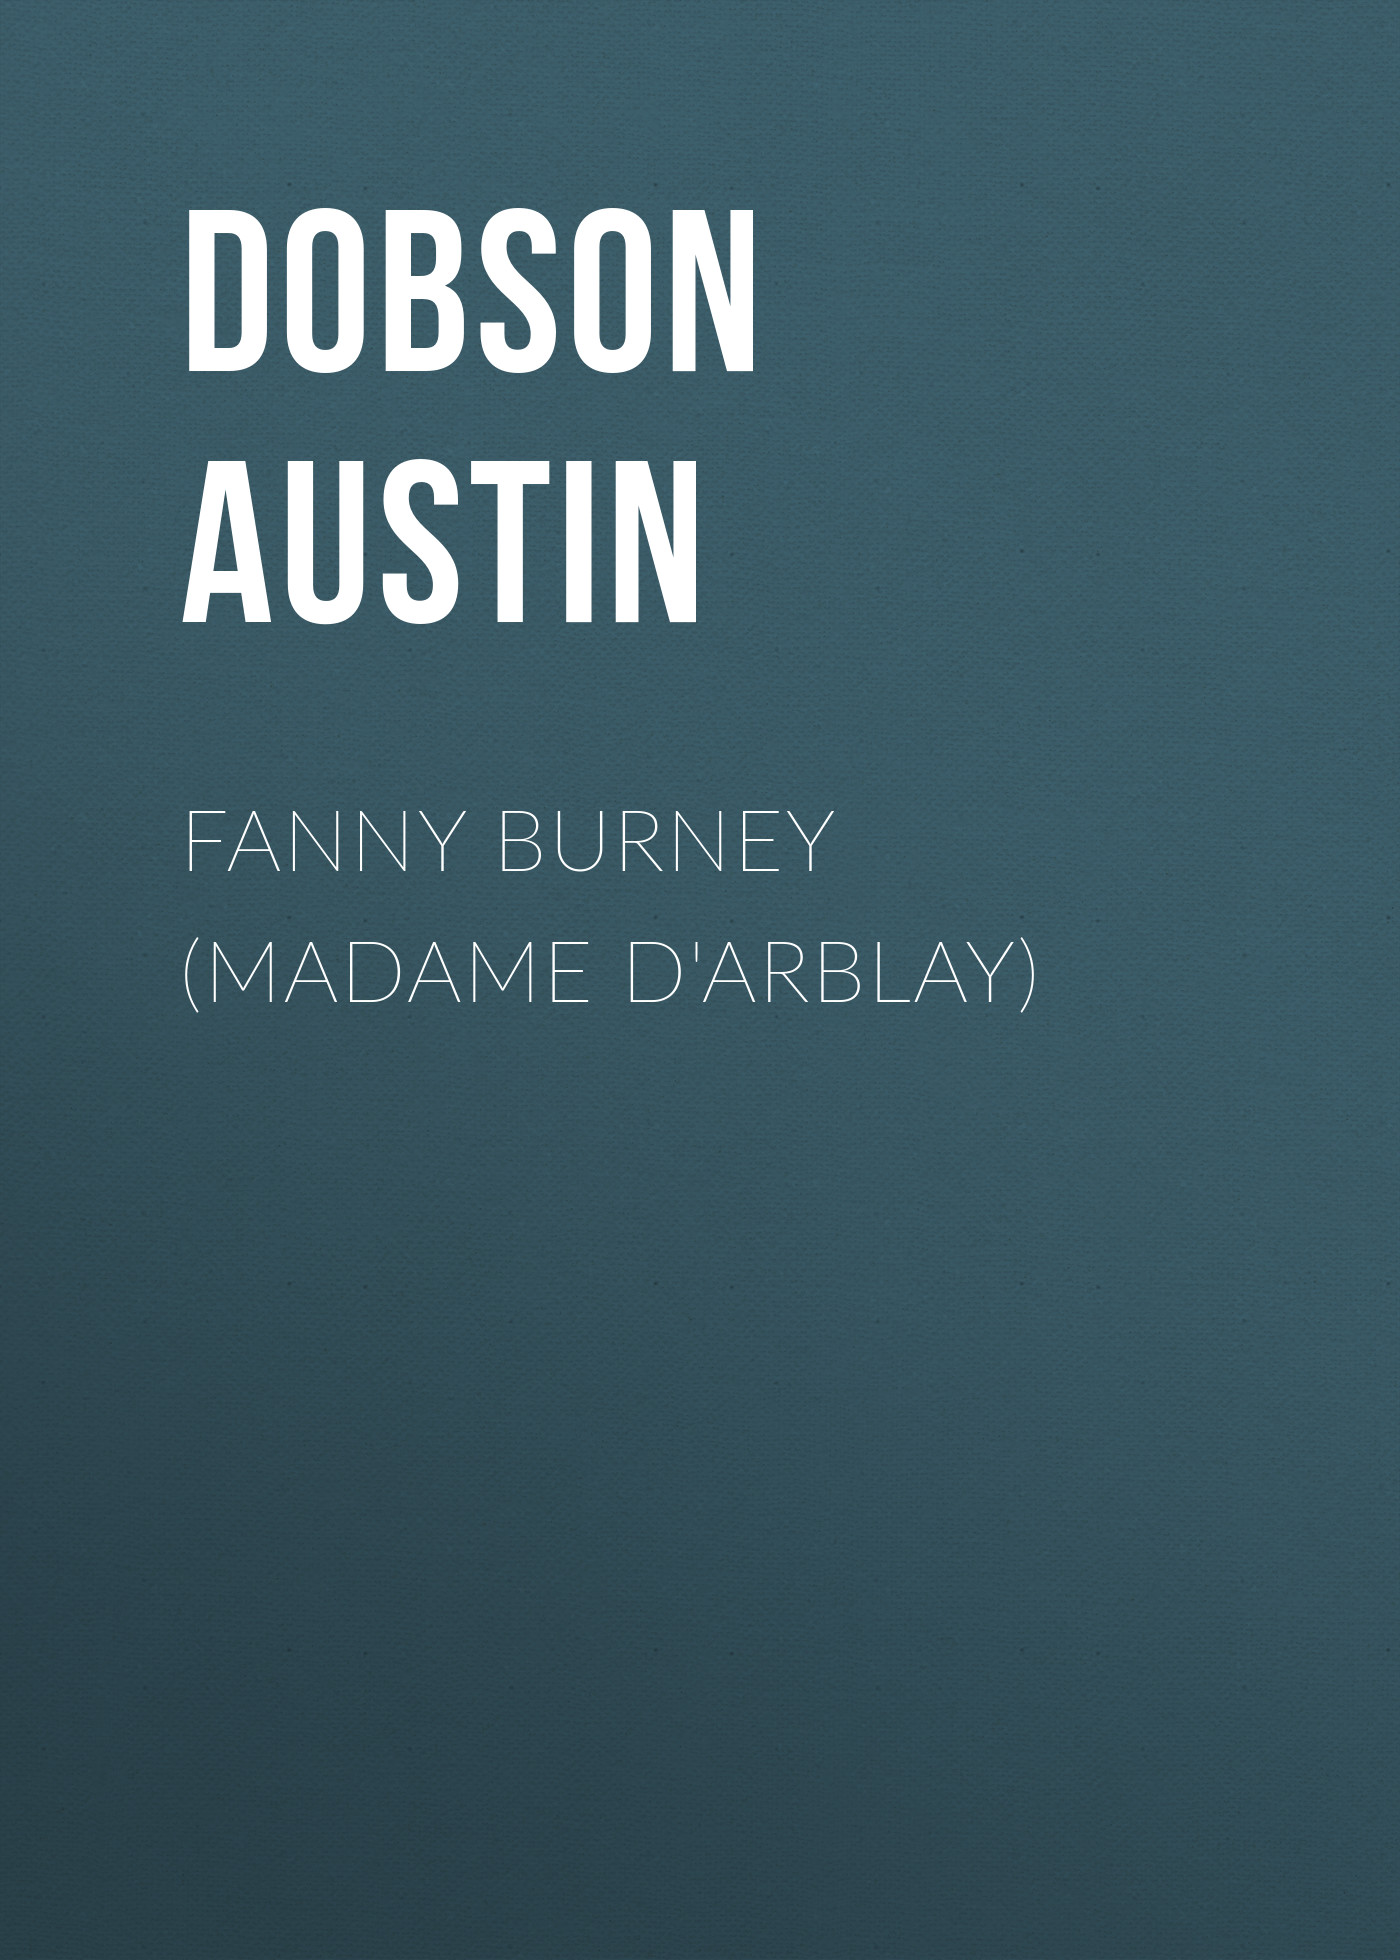 Книга Fanny Burney (Madame D'Arblay) из серии , созданная Austin Dobson, может относится к жанру Зарубежная старинная литература, Зарубежная классика. Стоимость электронной книги Fanny Burney (Madame D'Arblay) с идентификатором 24620053 составляет 0 руб.